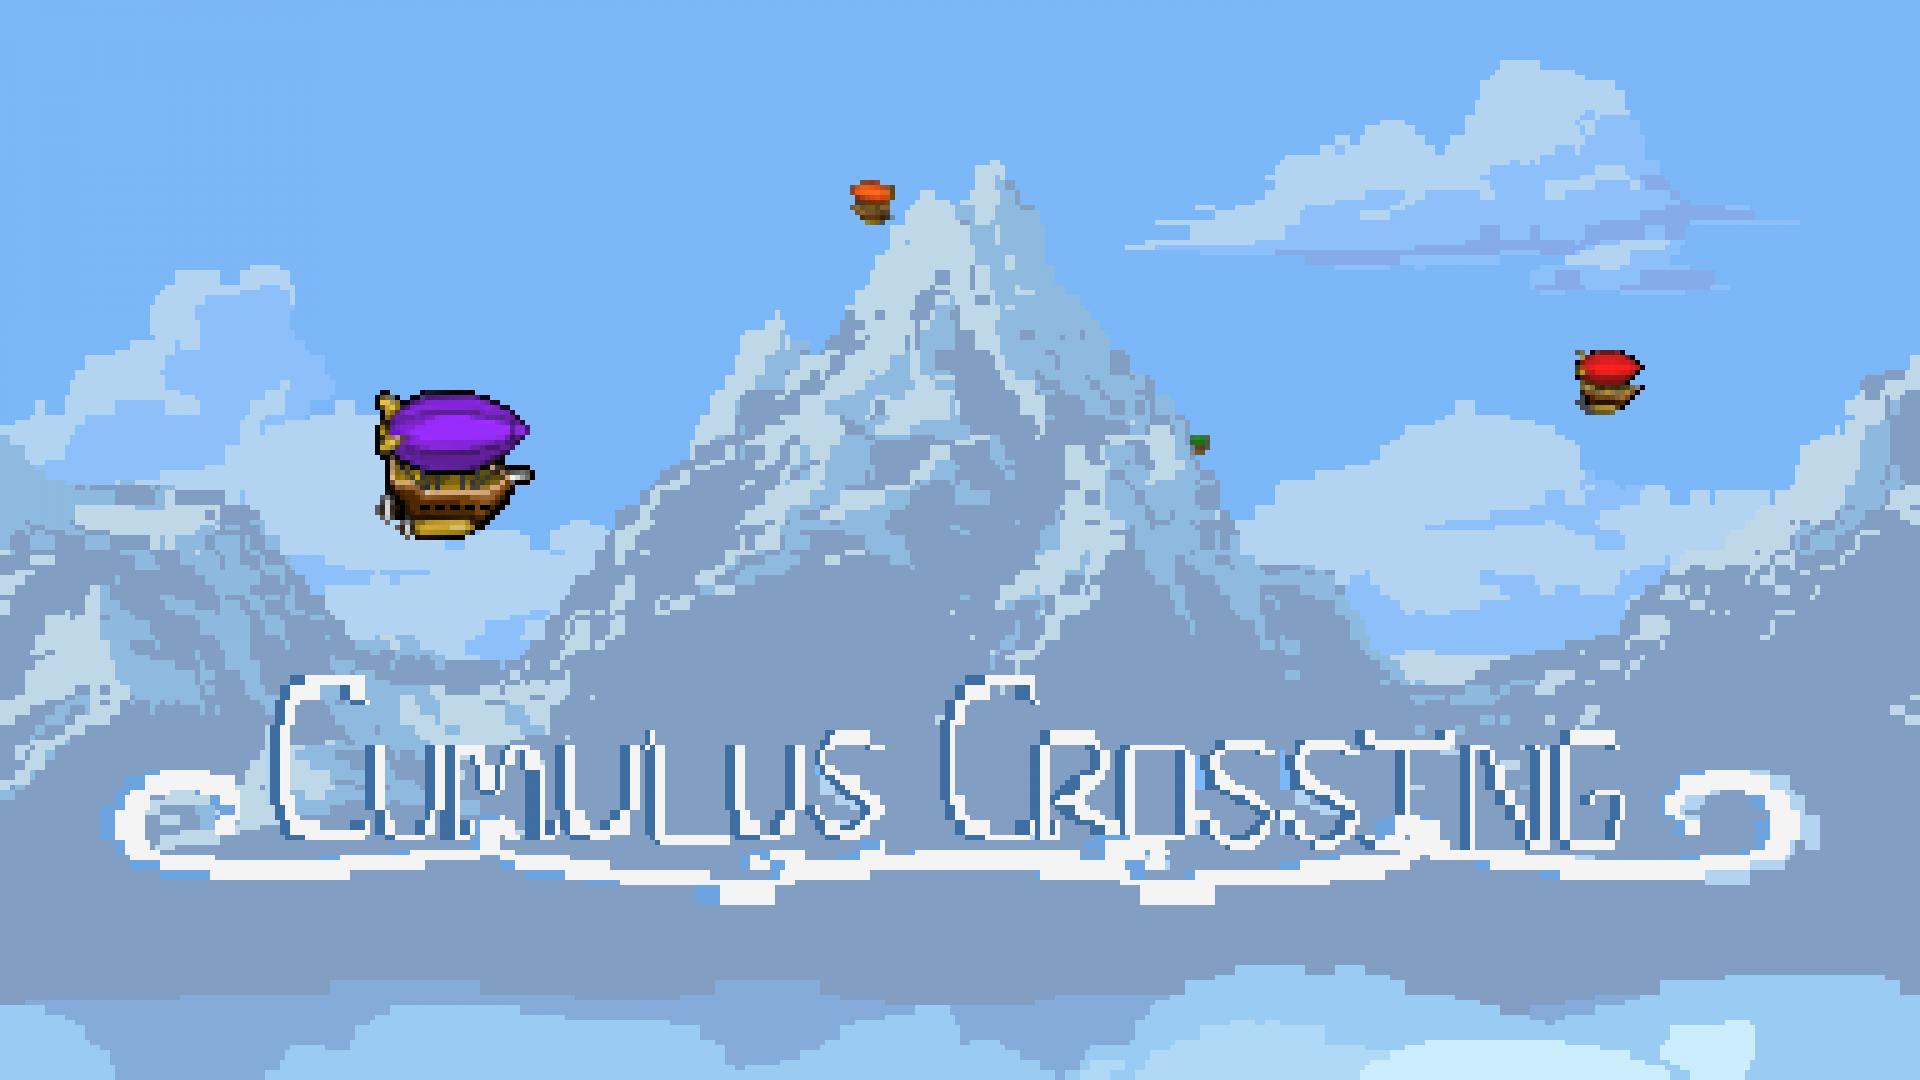 Cumulus Crossing